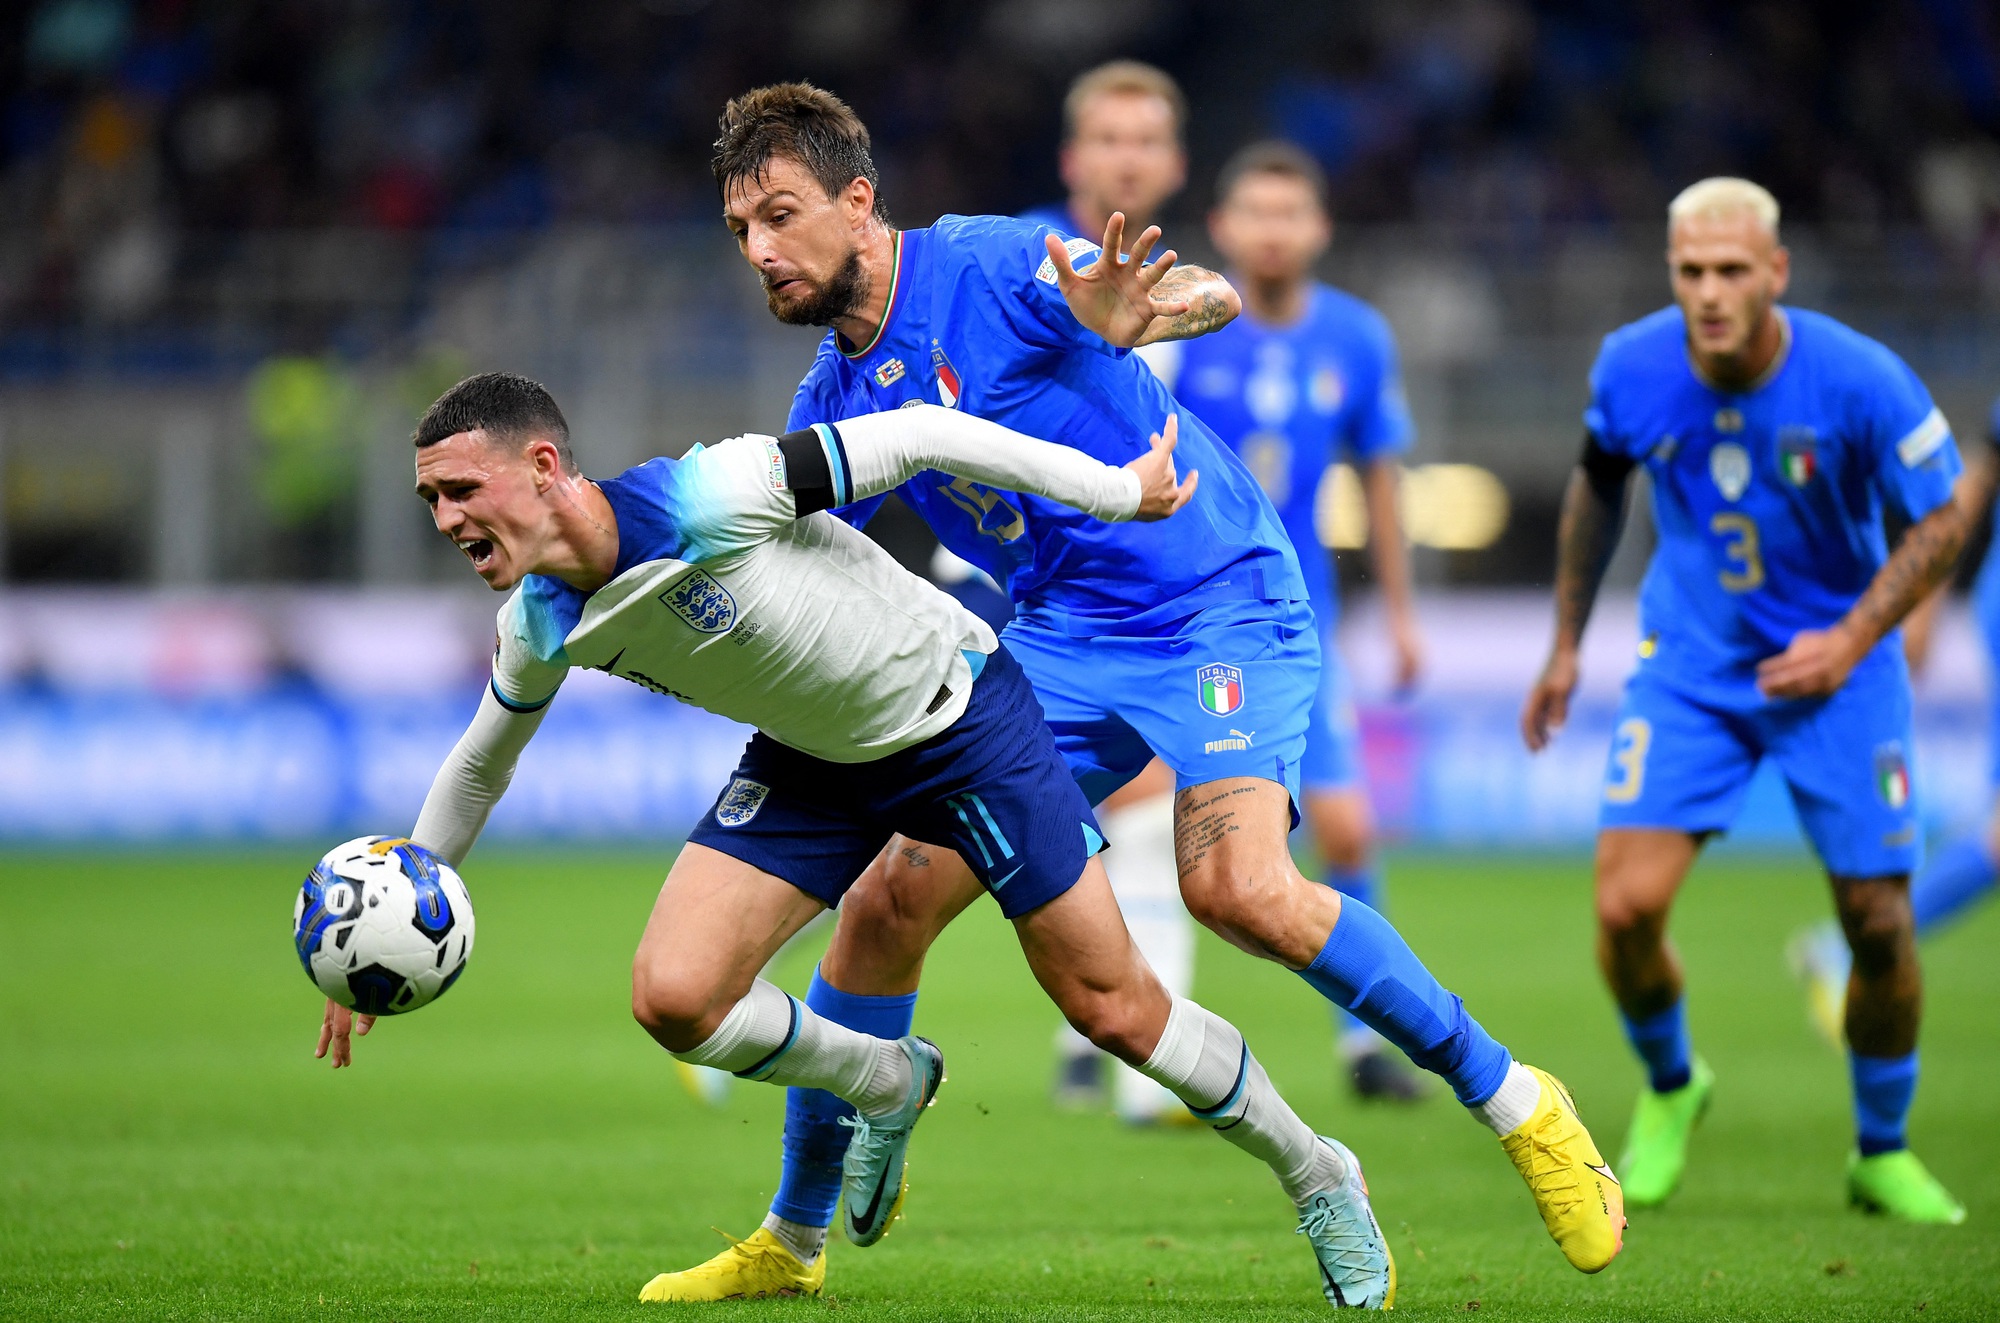 Thua sốc trên đất Ý, tuyển Anh rớt hạng Nations League - Ảnh 2.